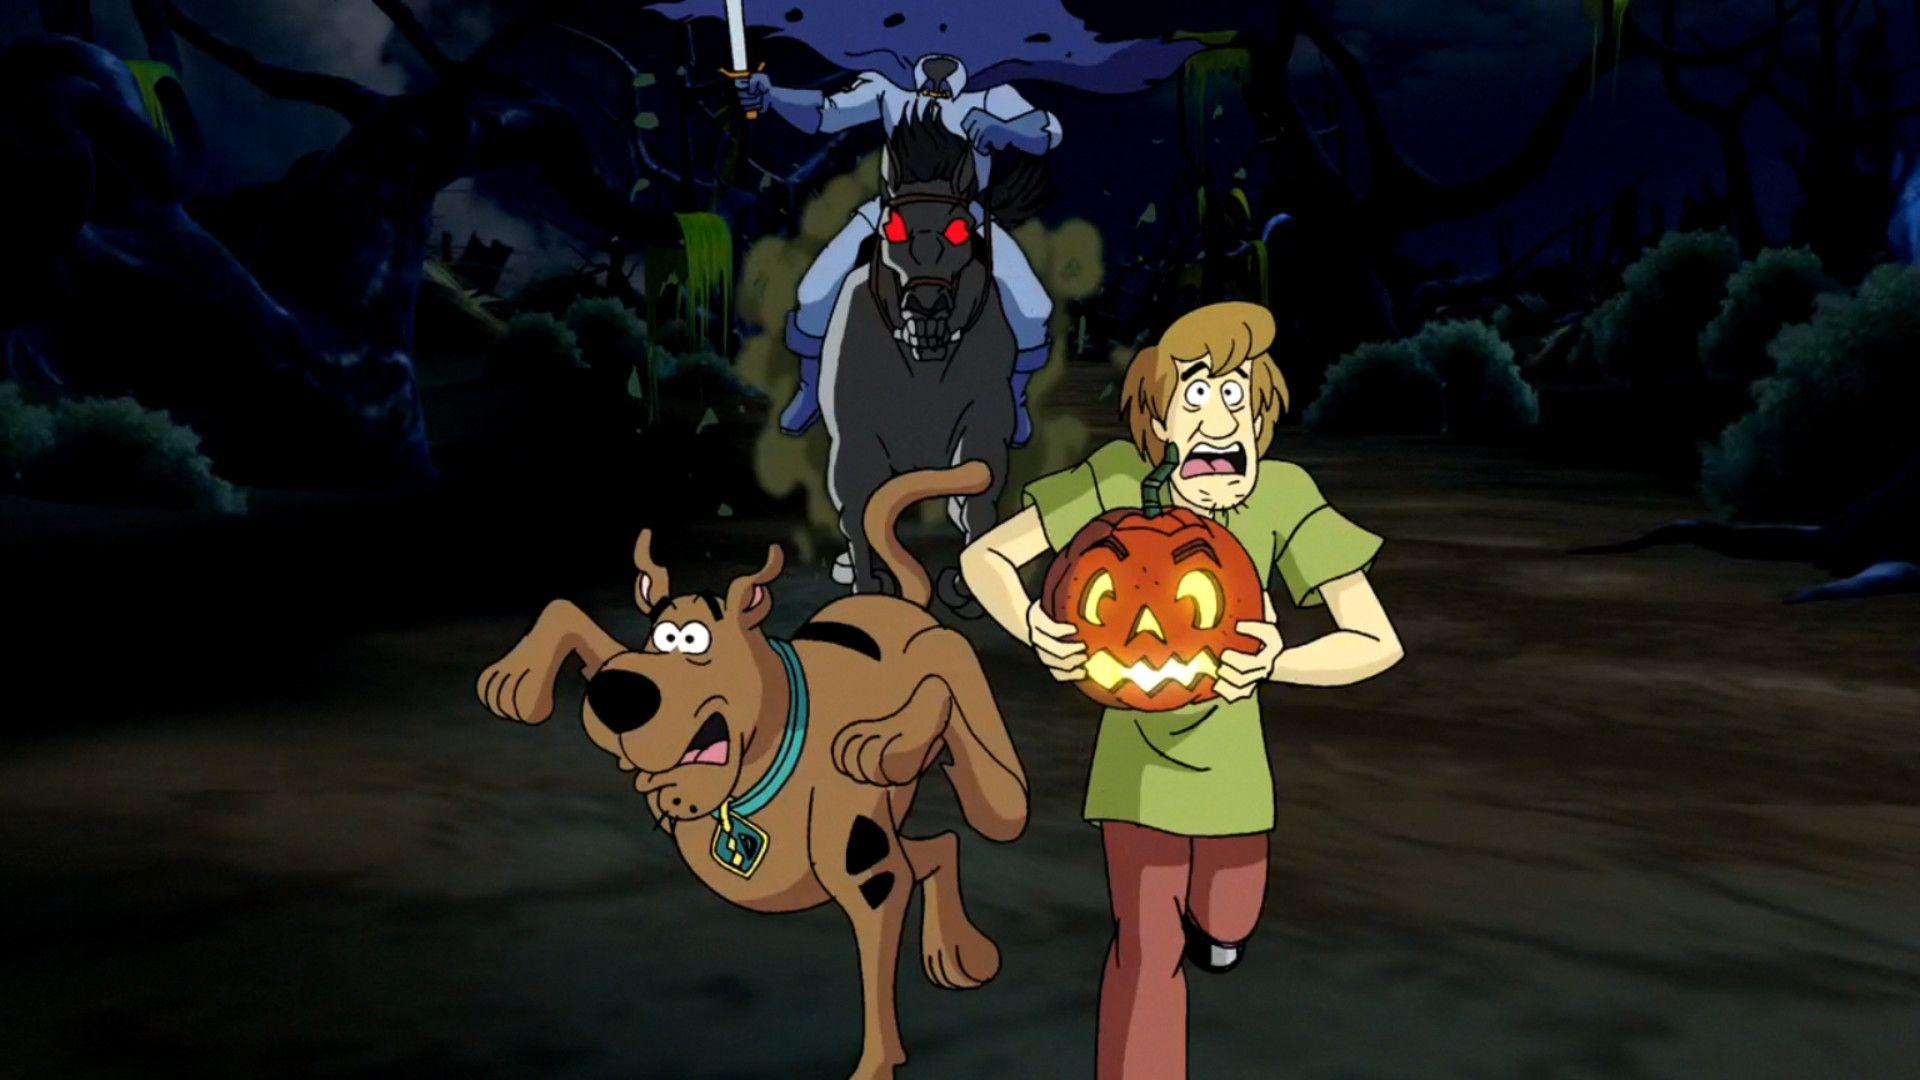 Scooby Doo Halloween Wallpapers - Top